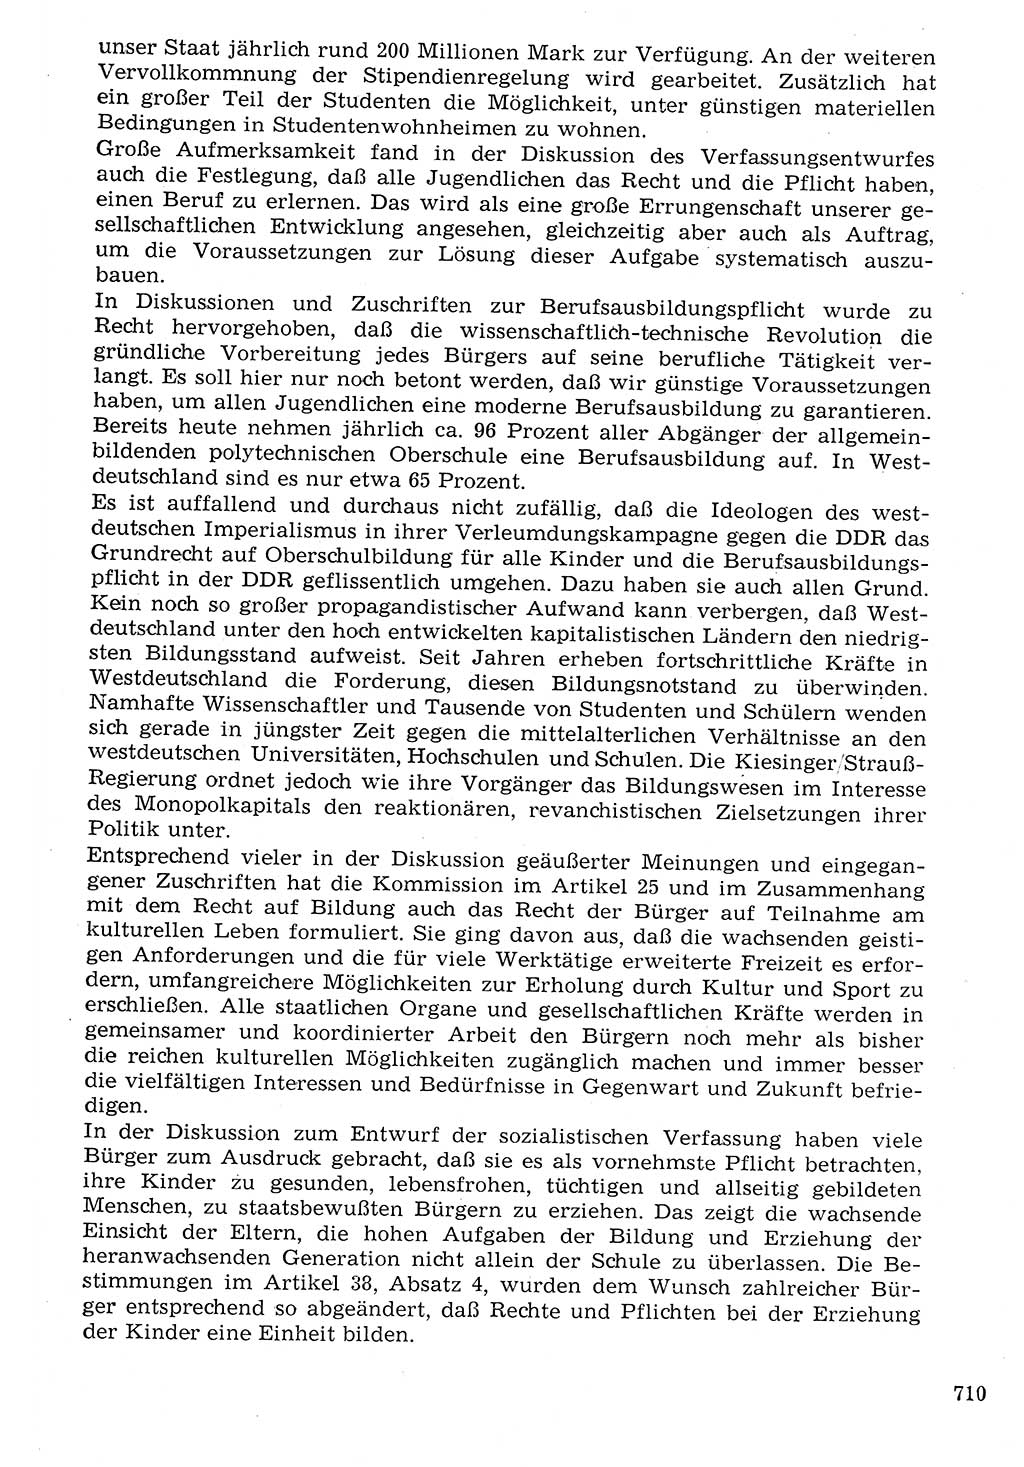 Staat und Recht (StuR), 17. Jahrgang [Deutsche Demokratische Republik (DDR)] 1968, Seite 710 (StuR DDR 1968, S. 710)